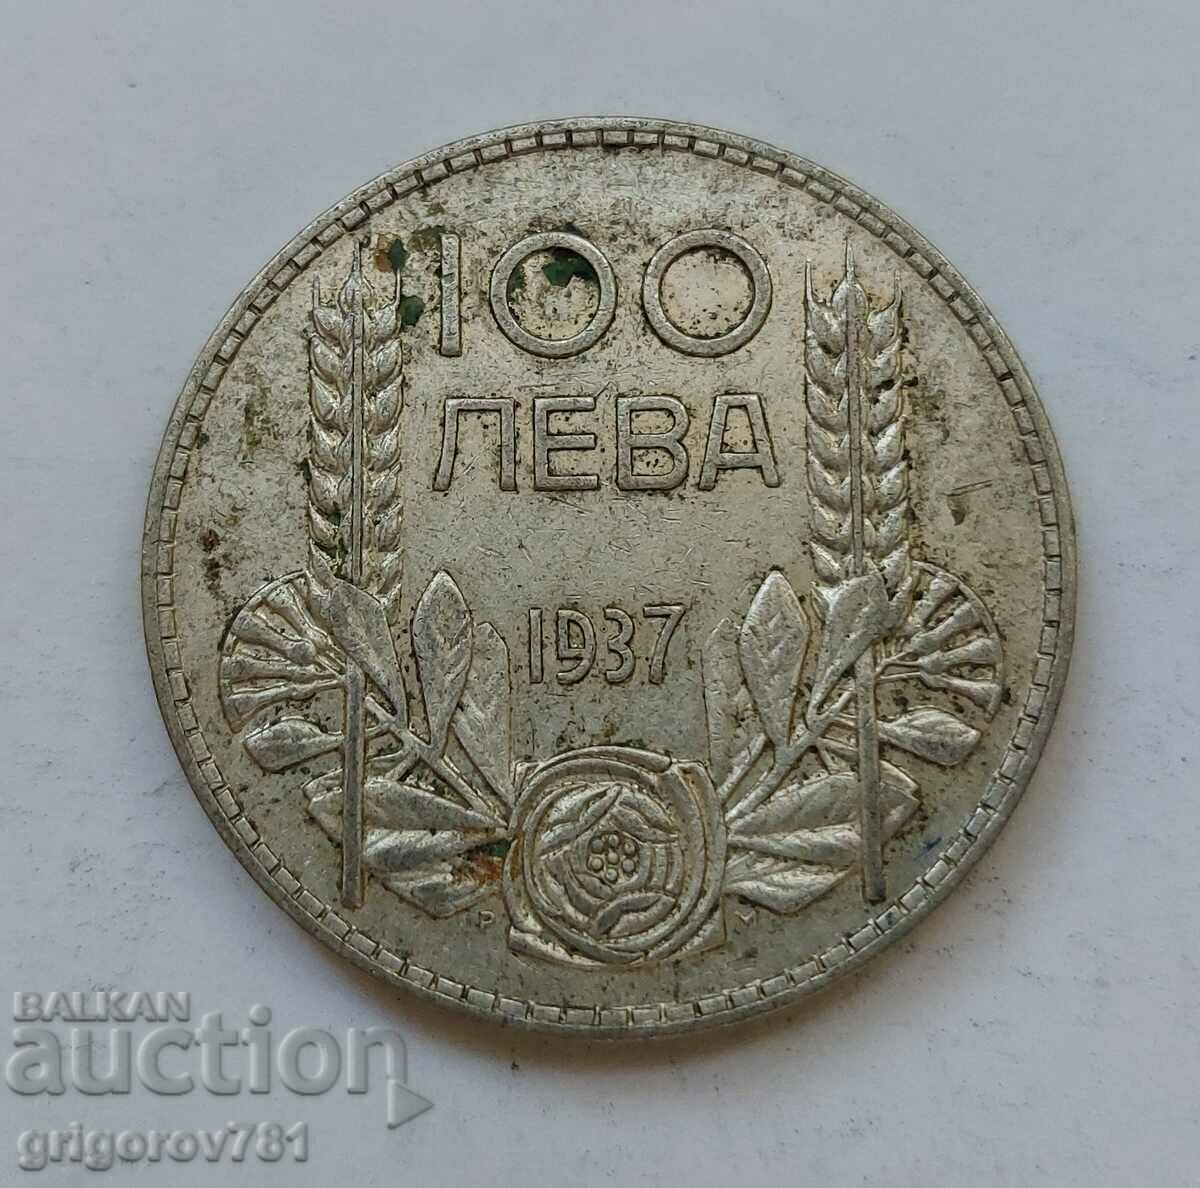 100 leva silver Bulgaria 1937 - silver coin #135